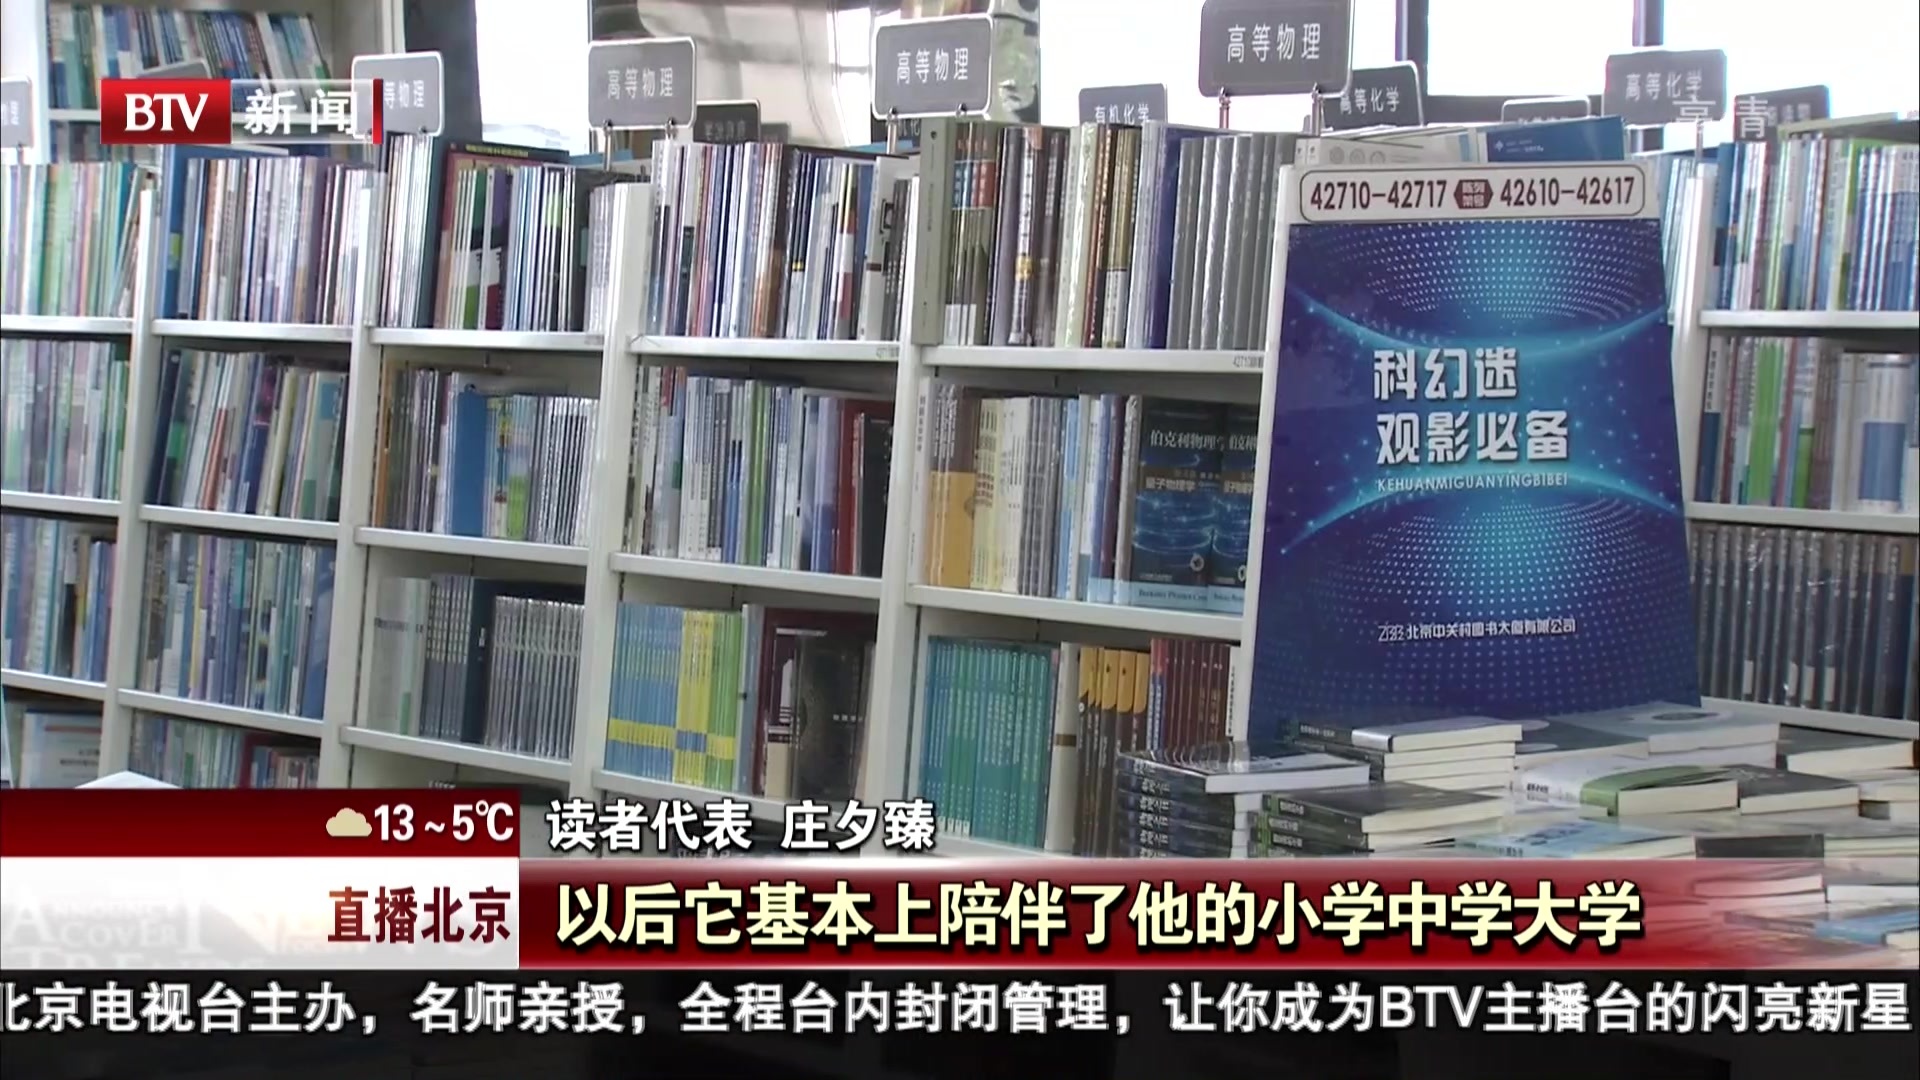 中关村图书大厦15岁  邀老读者恳谈交流